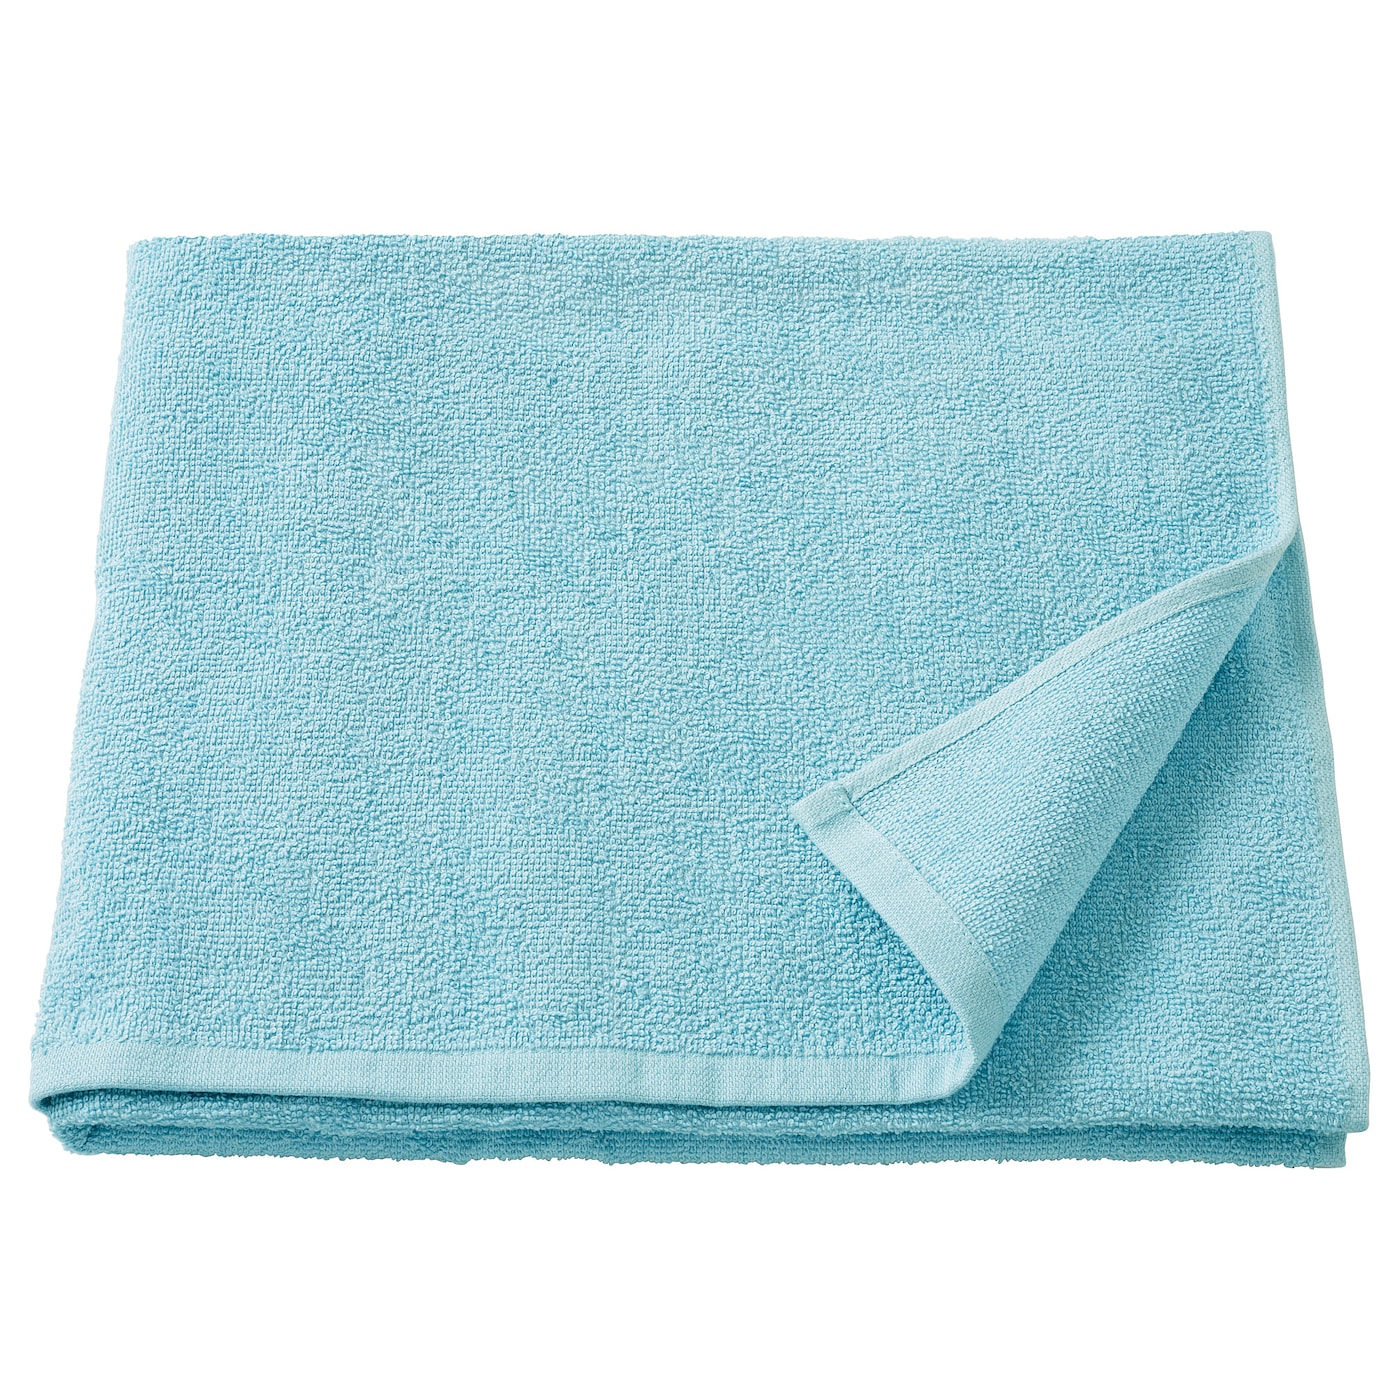 KORNAN Badetuch  - Handtücher - Textilien Ideen für dein Zuhause von Home Trends. Textilien Trends von Social Media Influencer für dein Skandi Zuhause.